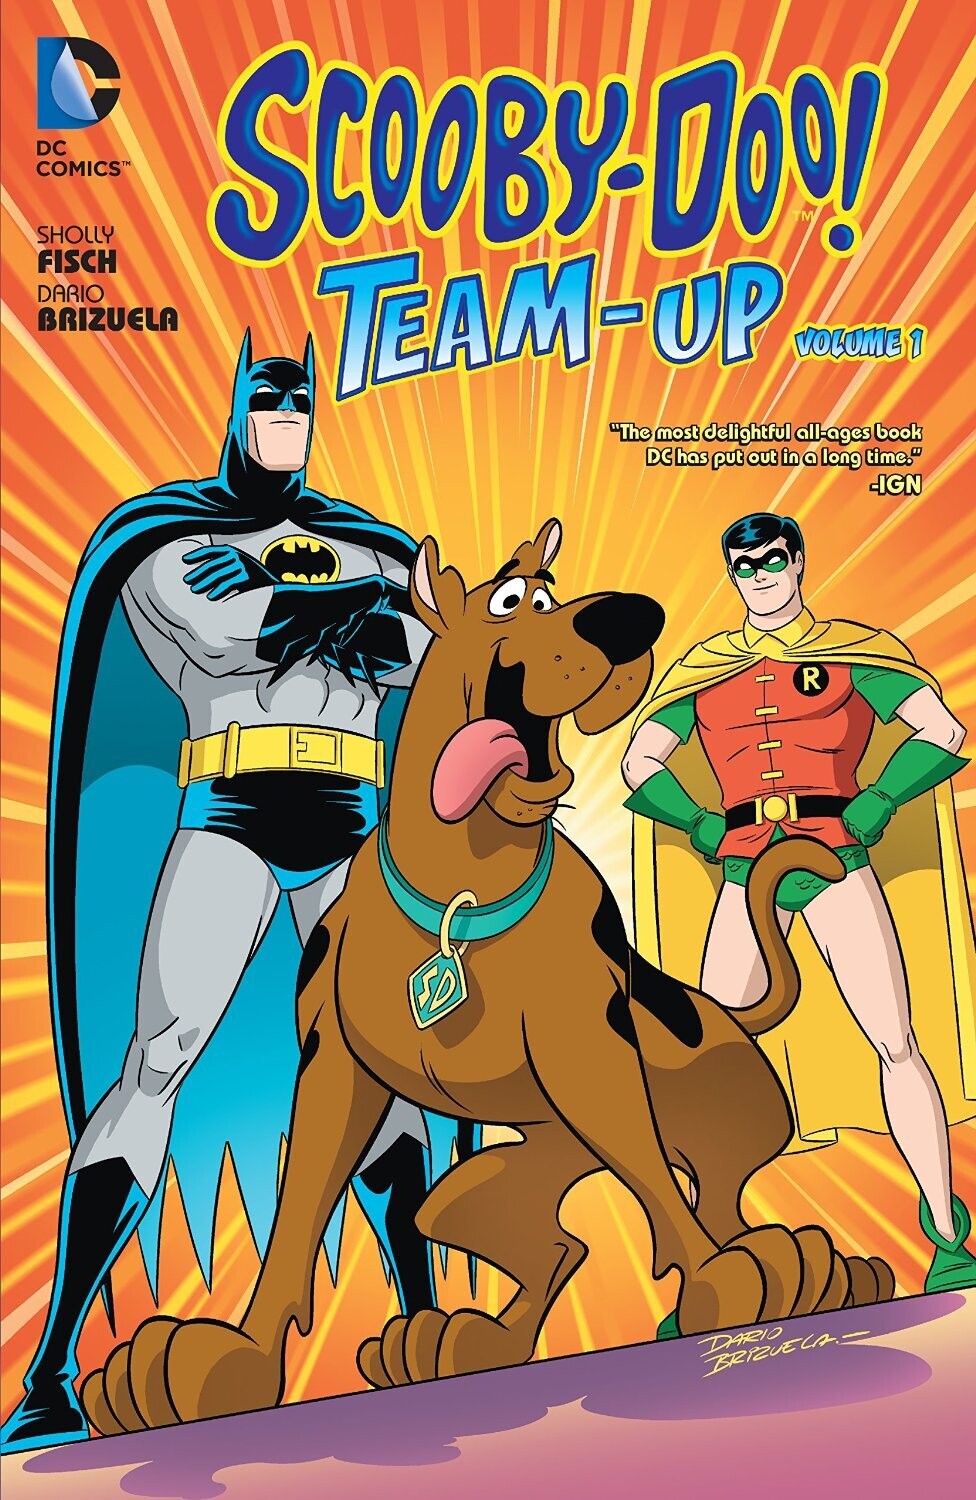 Scooby Doo Team-up Vol. 1